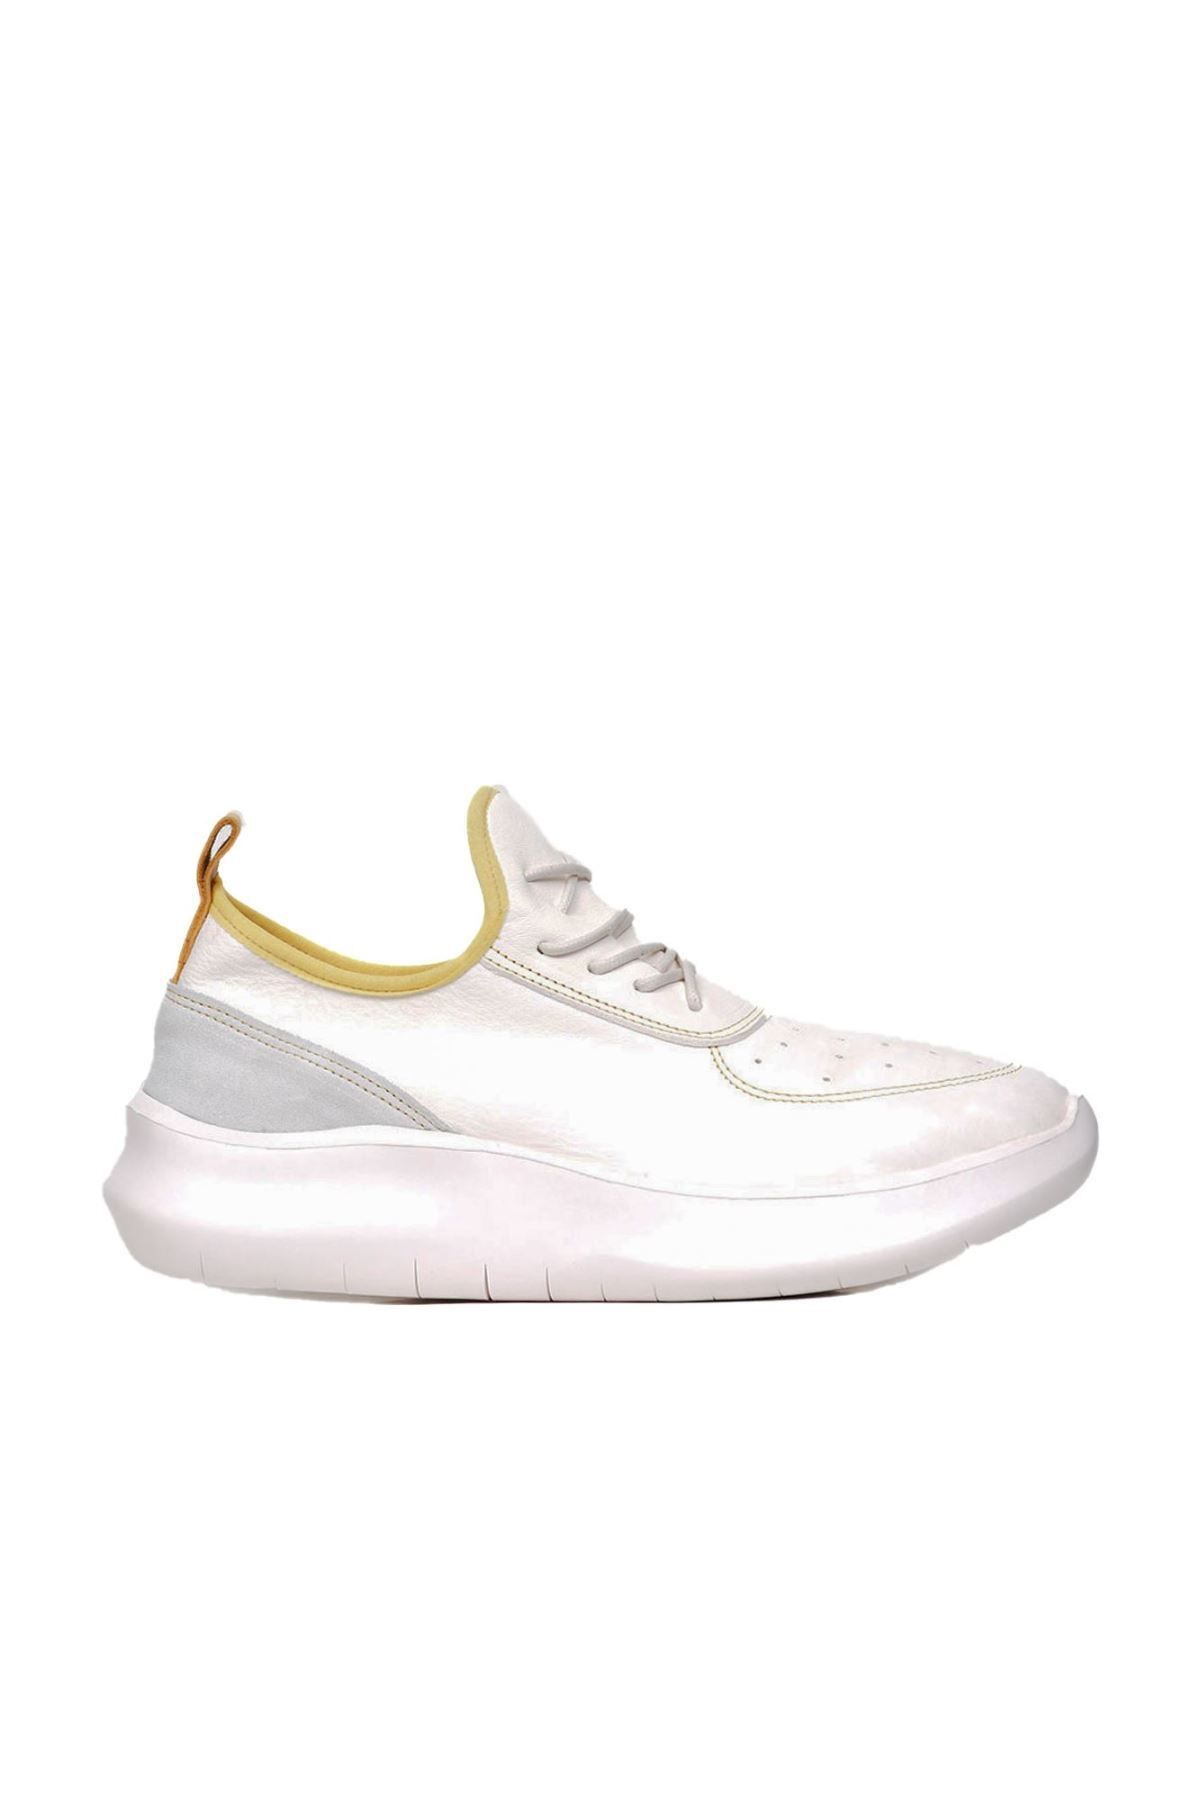 Bueno Shoes Beyaz Sarı Deri Kadın Dolgu Topuklu Spor Ayakkabı